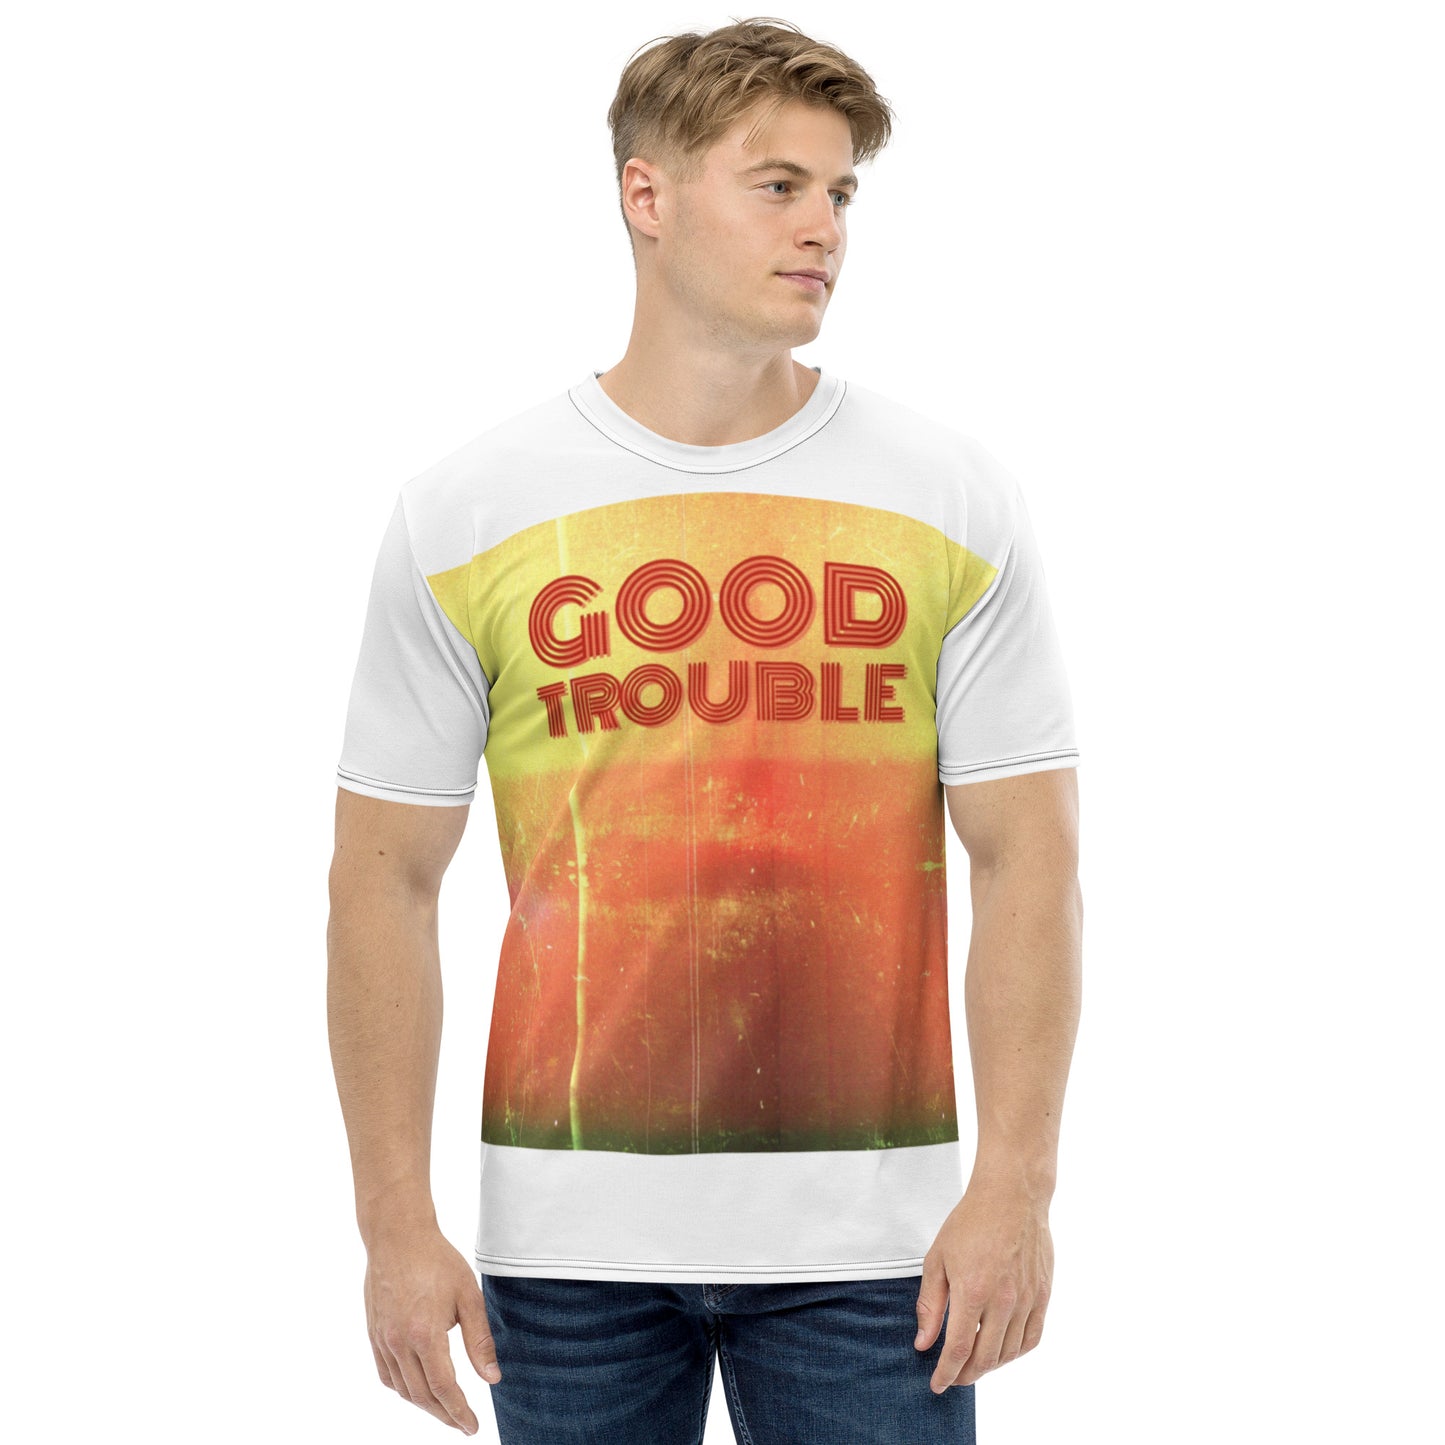 Good trouble Men's t-shirt